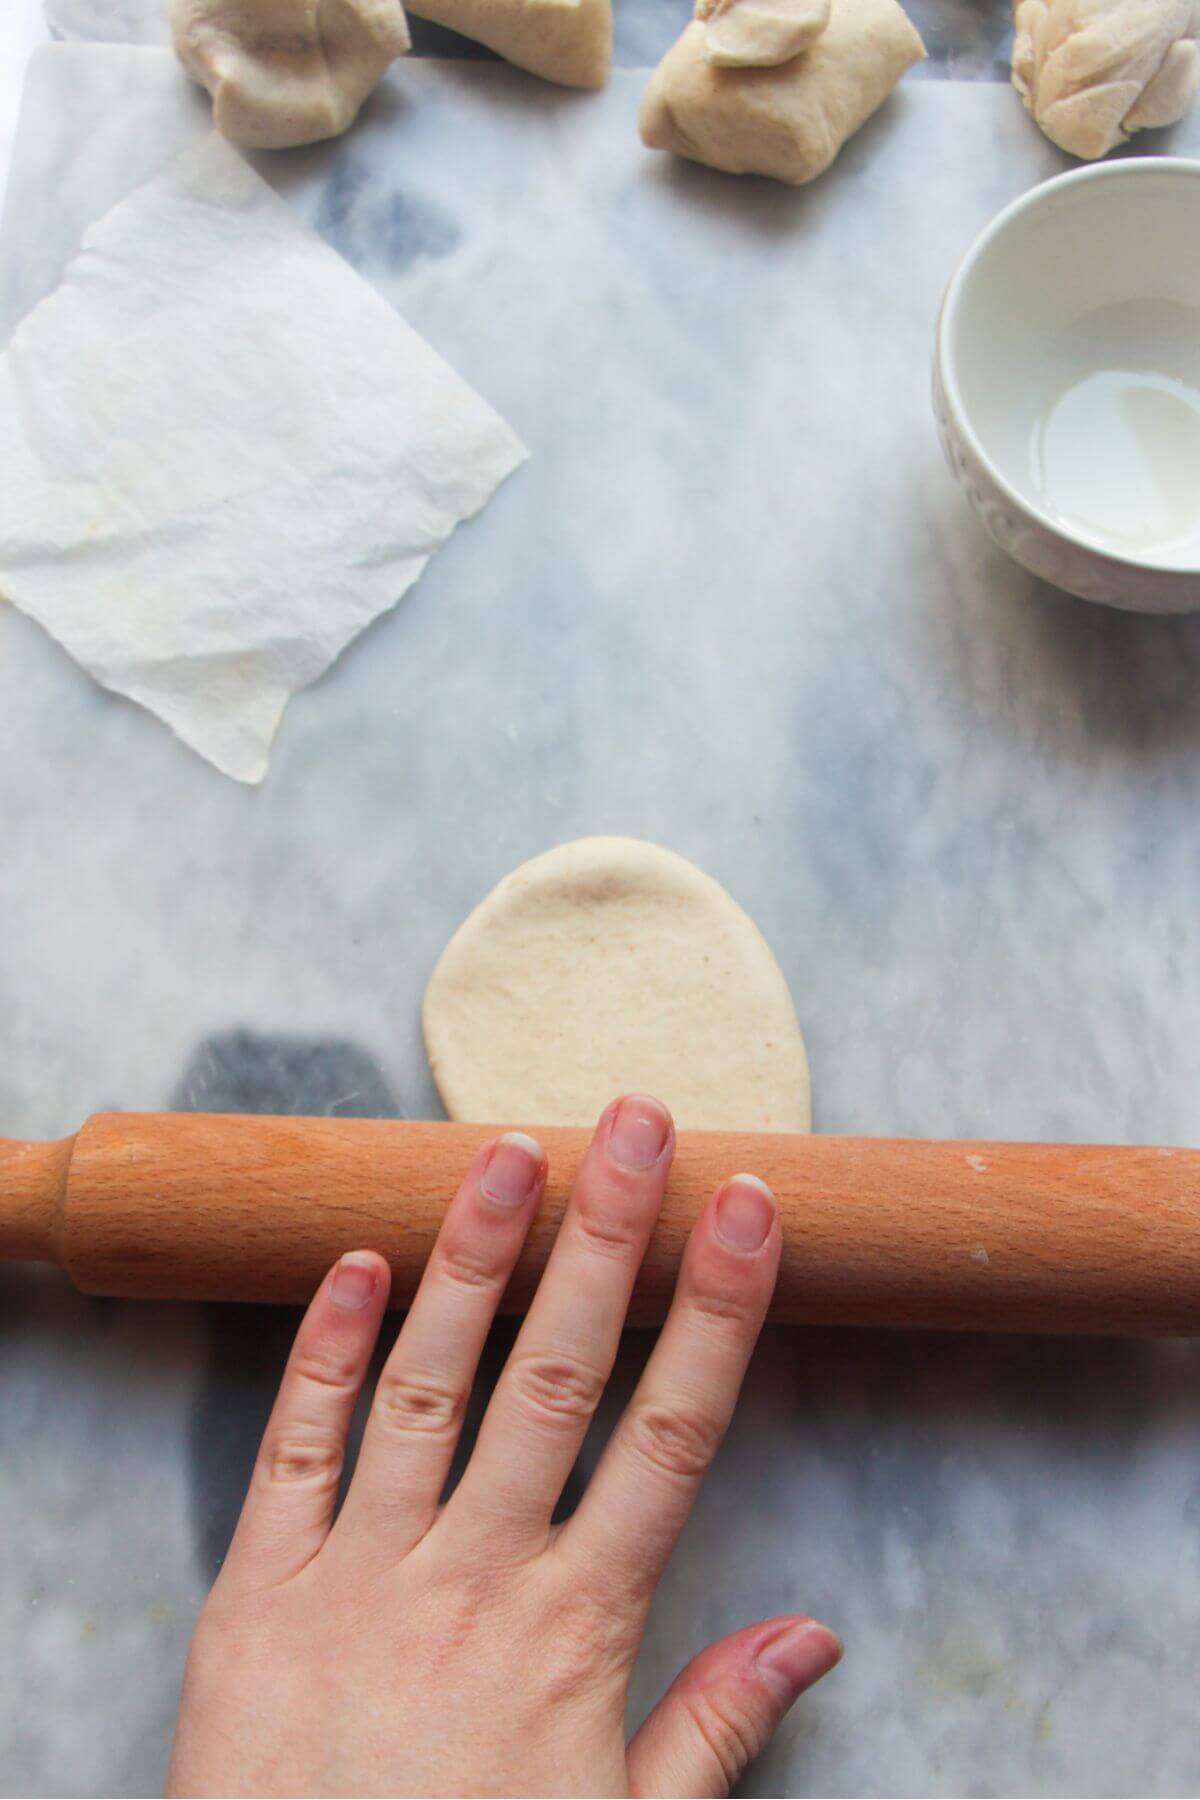 Rolling pin rolling bao bun dough into a longer oval.